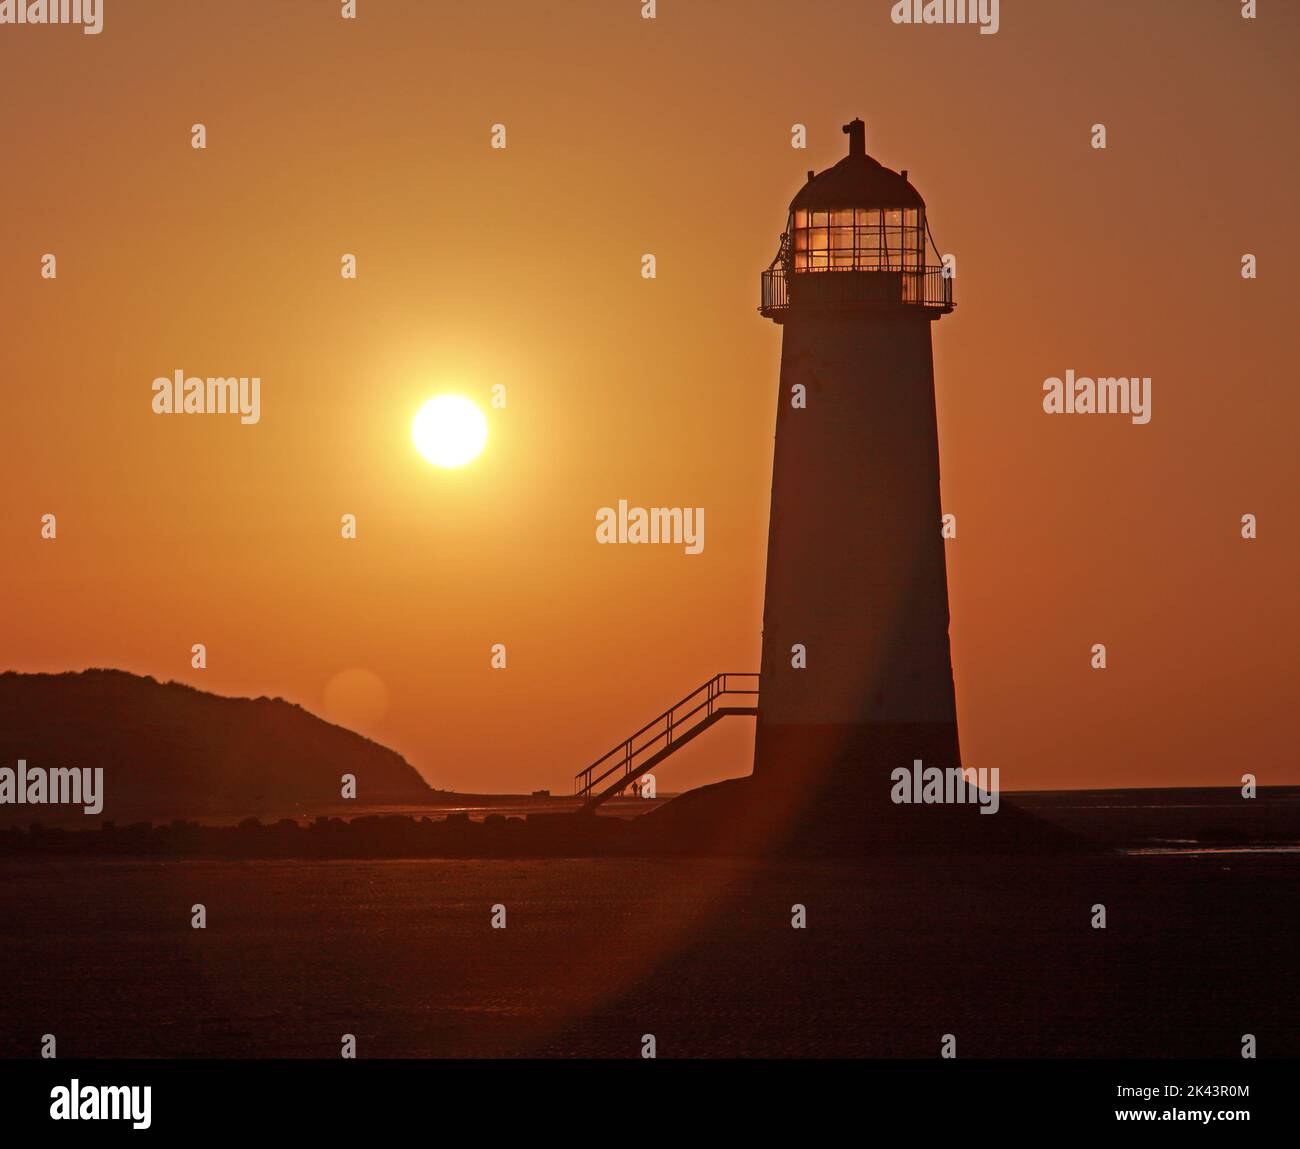 Point of Ayr Lighthouse, également connu sous le nom de Talacre Lighthouse, côte nord du pays de Galles, Royaume-Uni, CH8 9RD, au coucher du soleil en soirée Banque D'Images